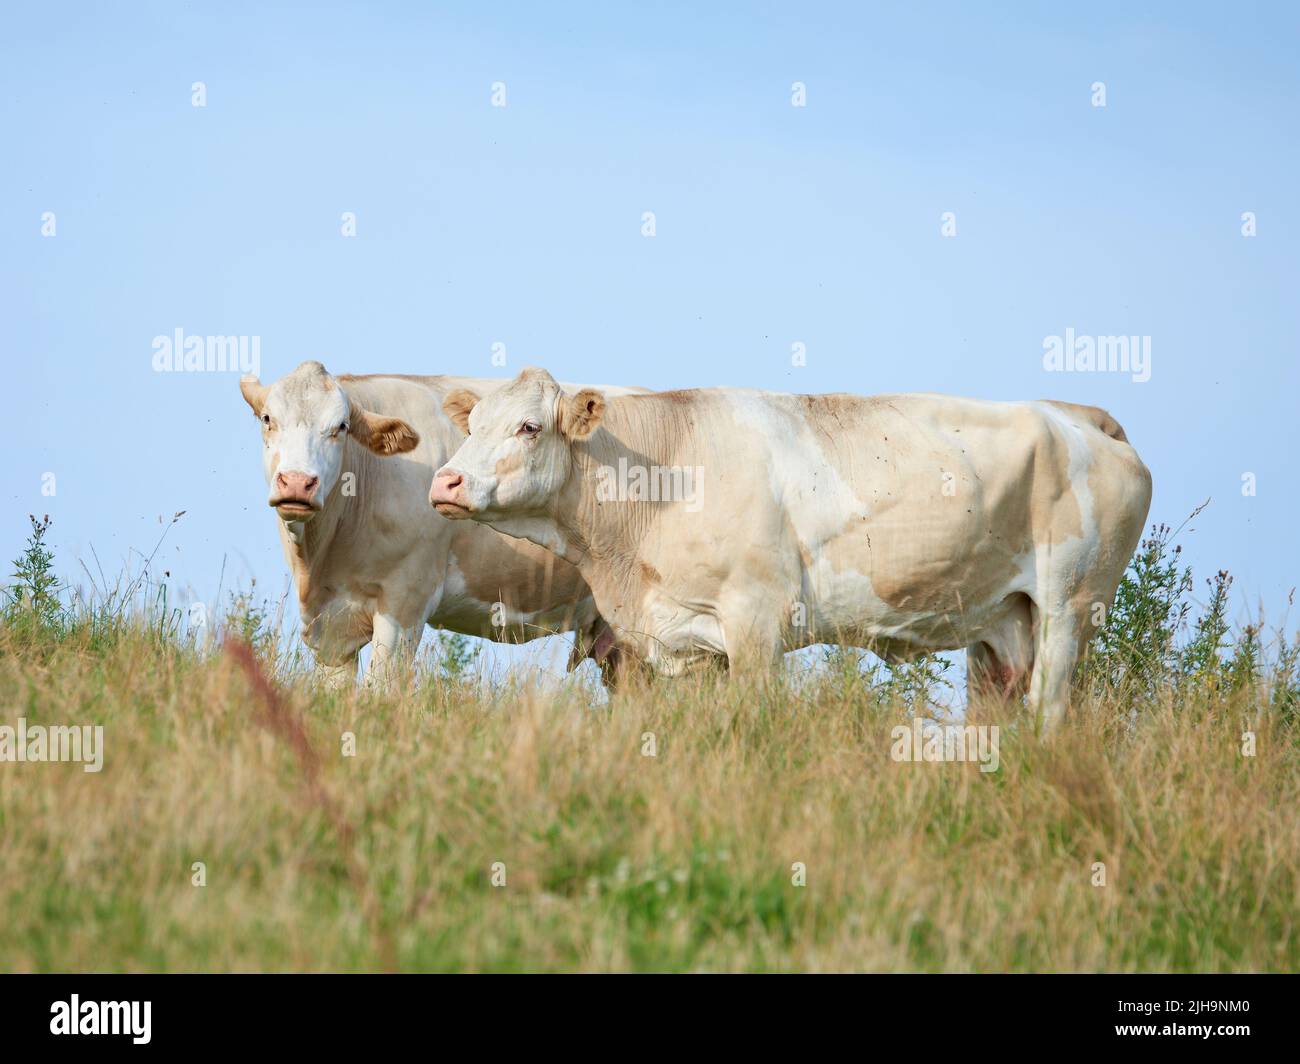 Élevage et élevage de bétail dans une ferme destinée à l'industrie du boeuf et des produits laitiers. Animaux paysagés sur des pâturages ou des pâturages. Deux vaches blanches debout Banque D'Images